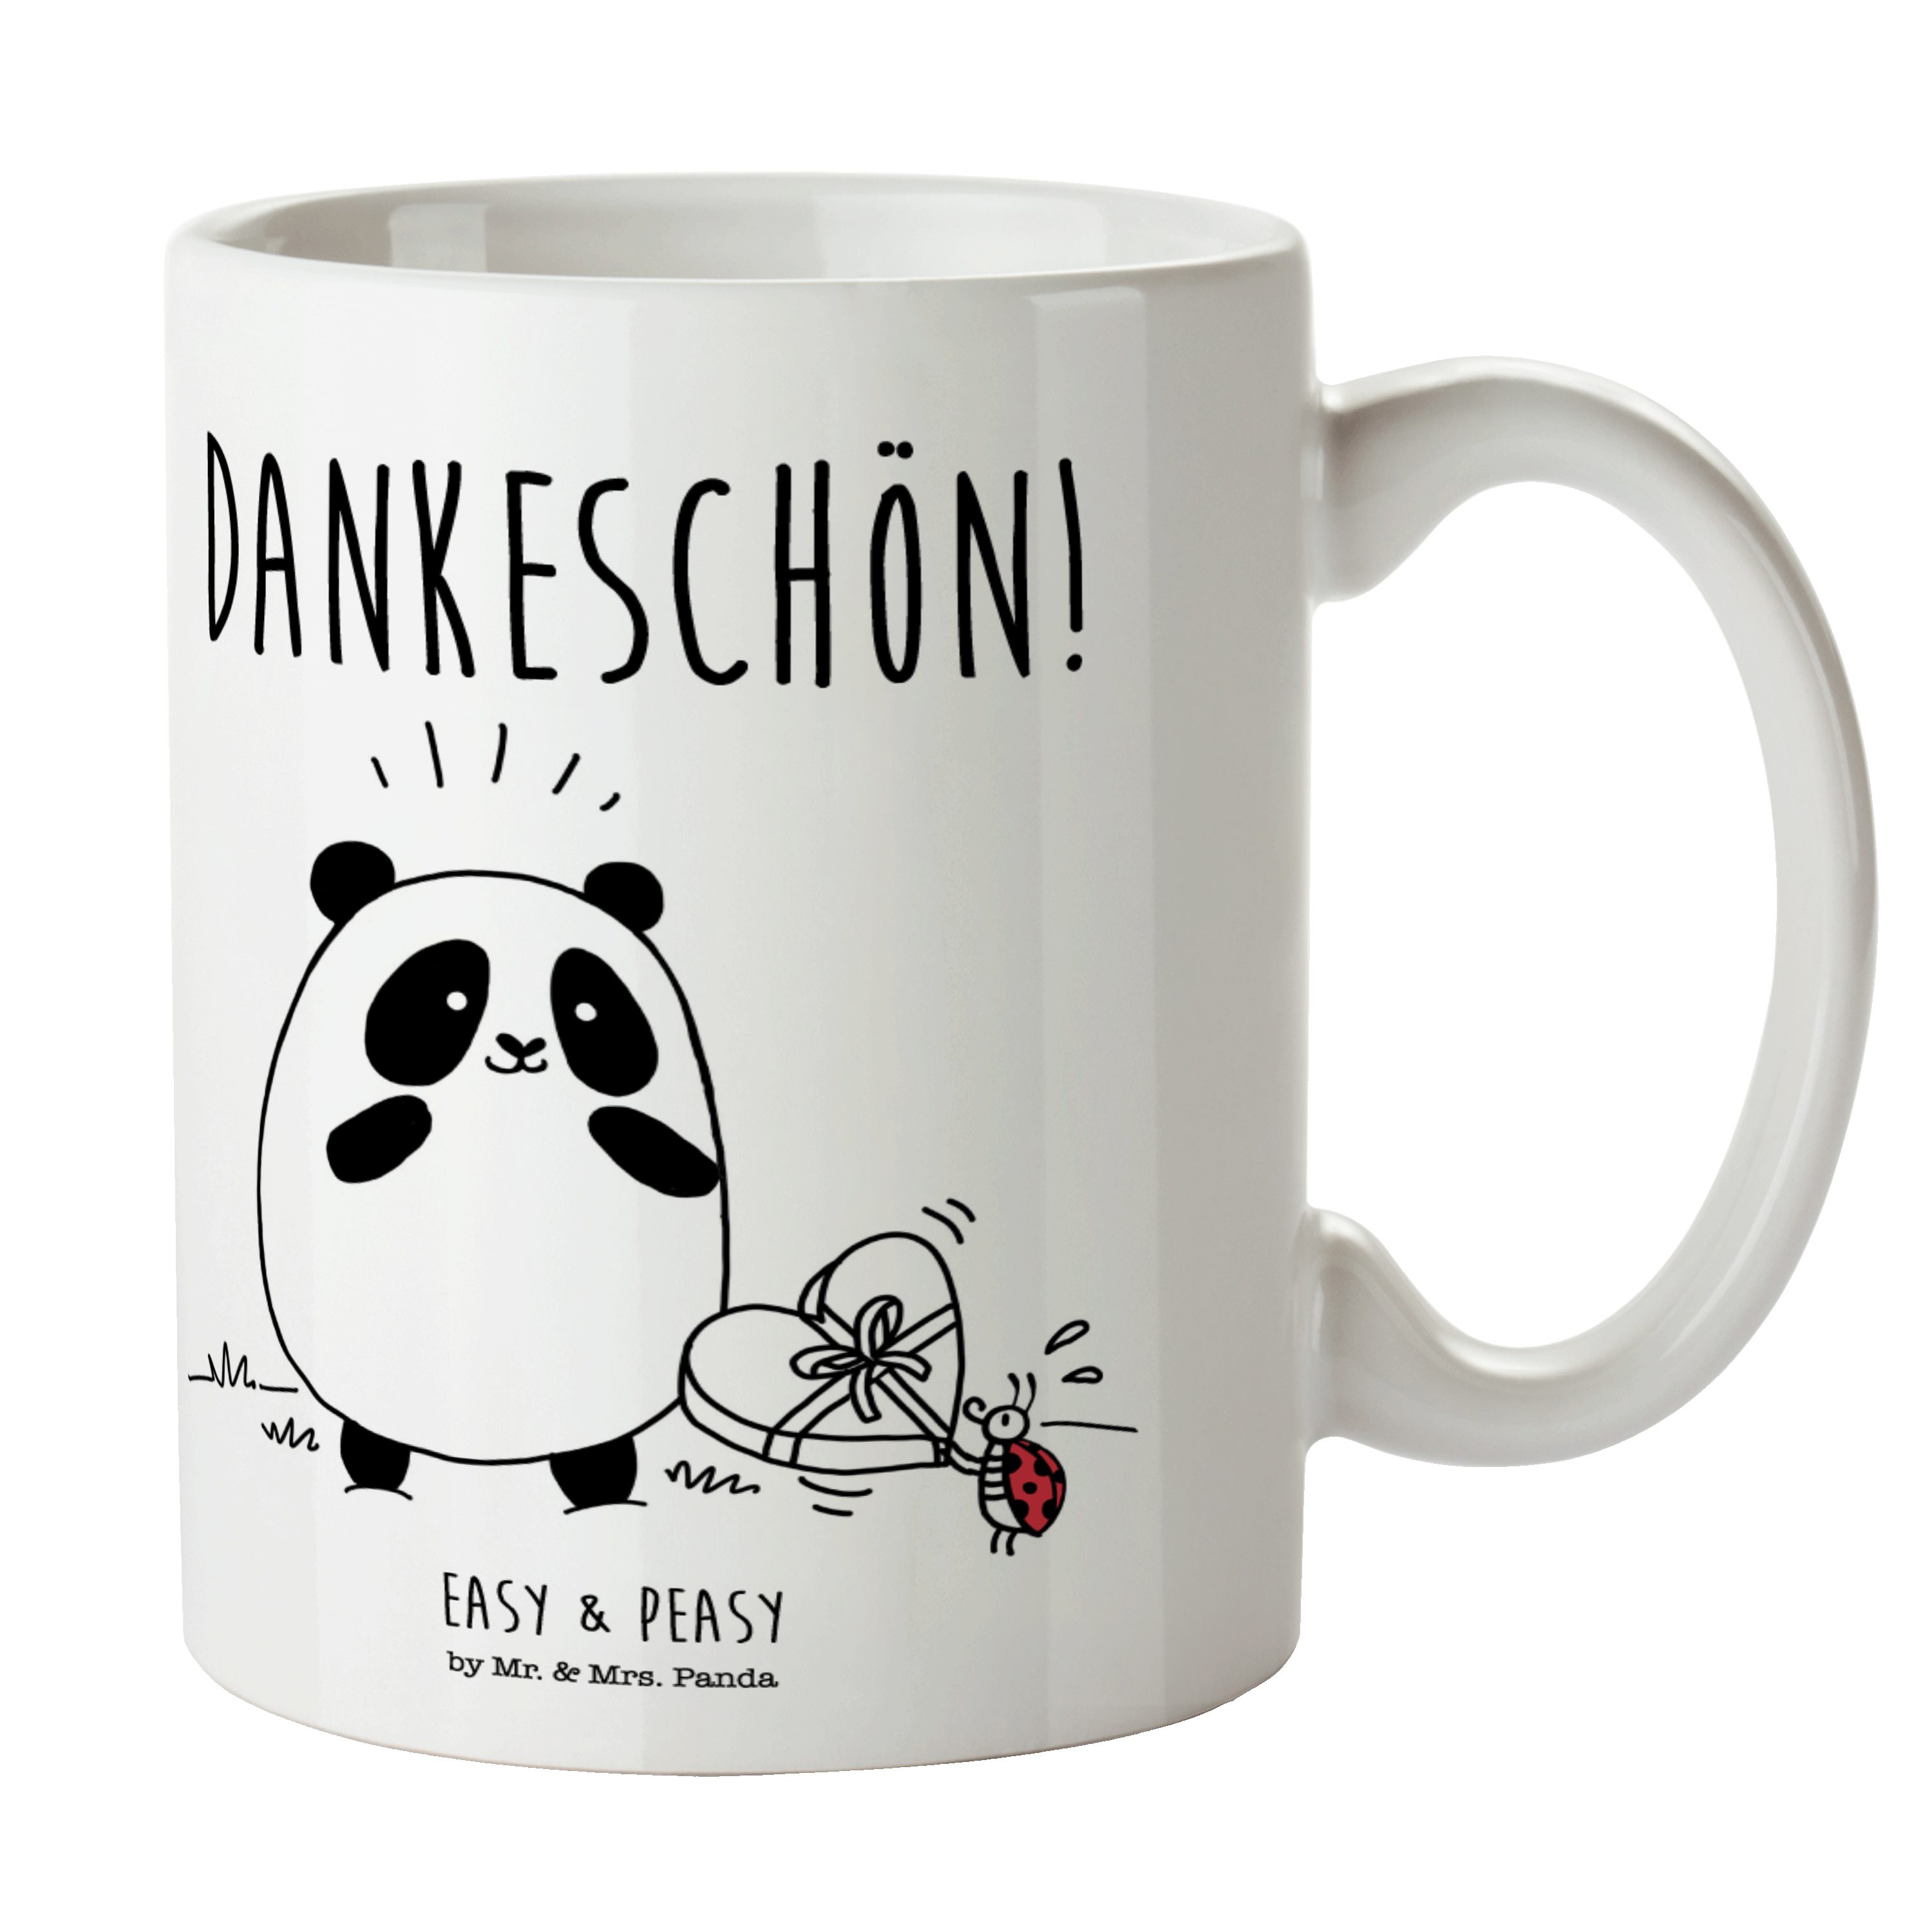 Mr. & Mrs. Panda Tasse Easy & Peasy Dankeschön - Weiß - Geschenk, Tasse Sprüche, Büro Tasse, Keramik